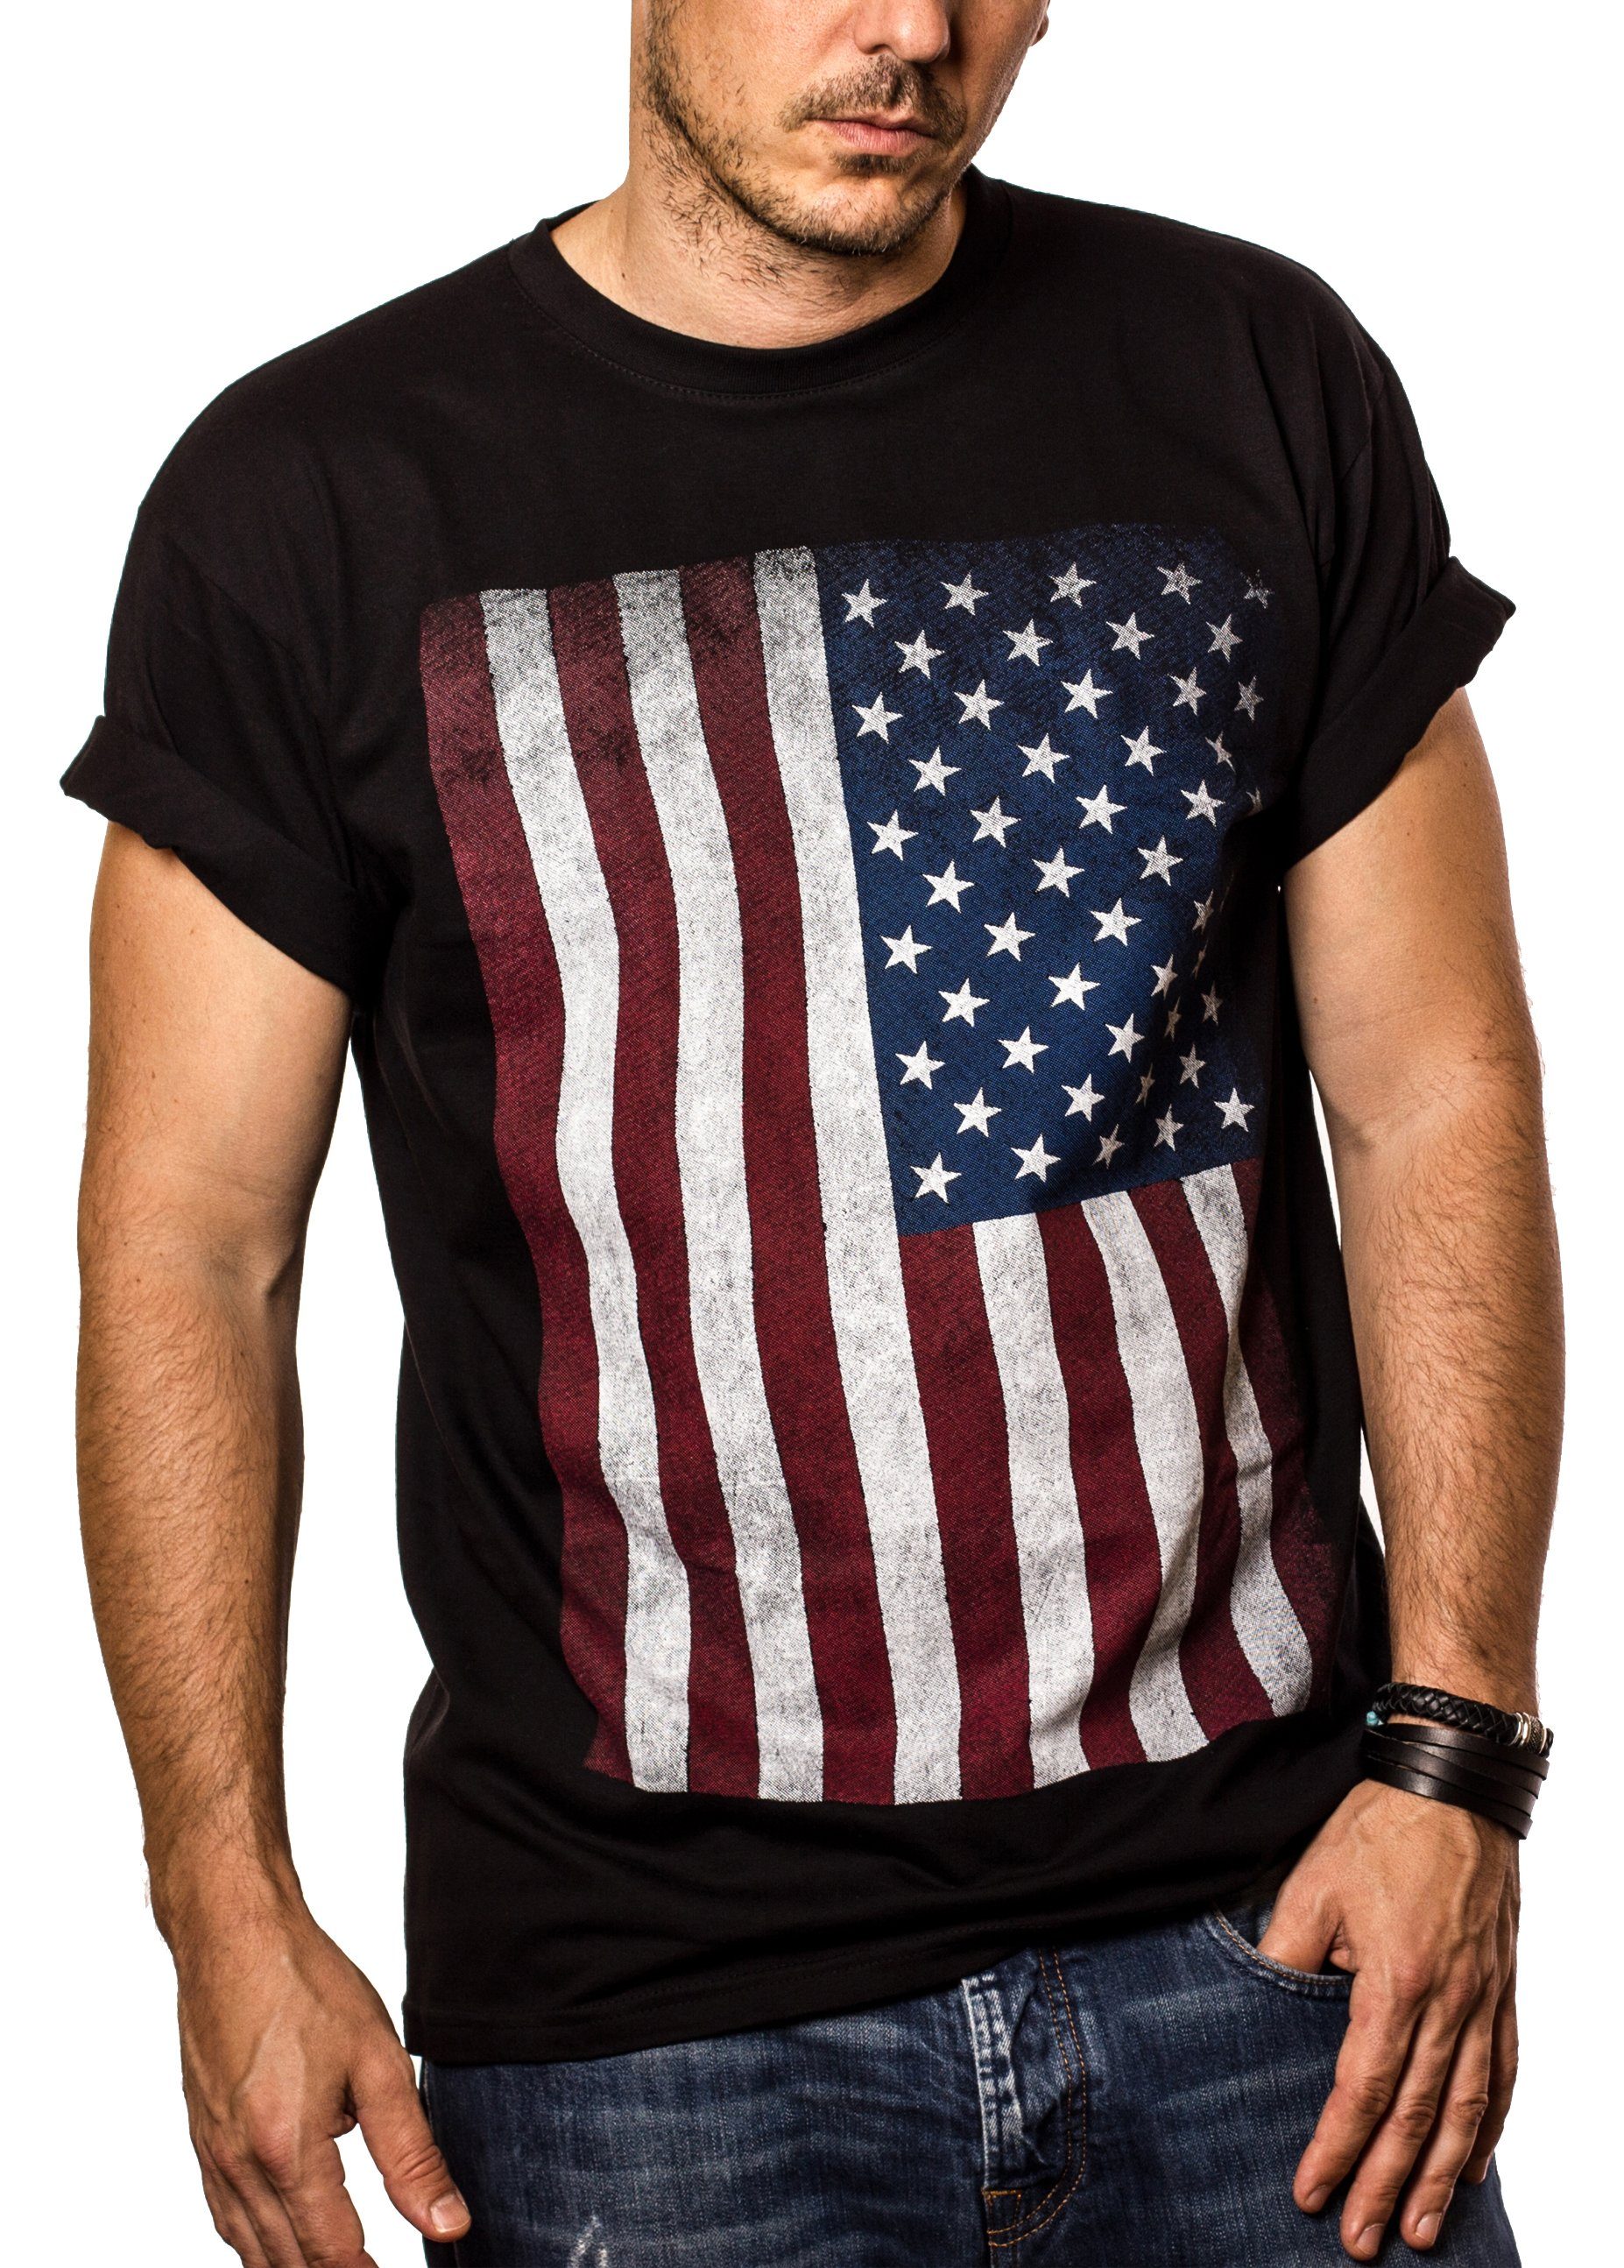 MAKAYA Print-Shirt Herren USA Fahne Vintage Amerika T-Shirt US Flagge Army Armee Männer mit Druck, aus Baumwolle Schwarz